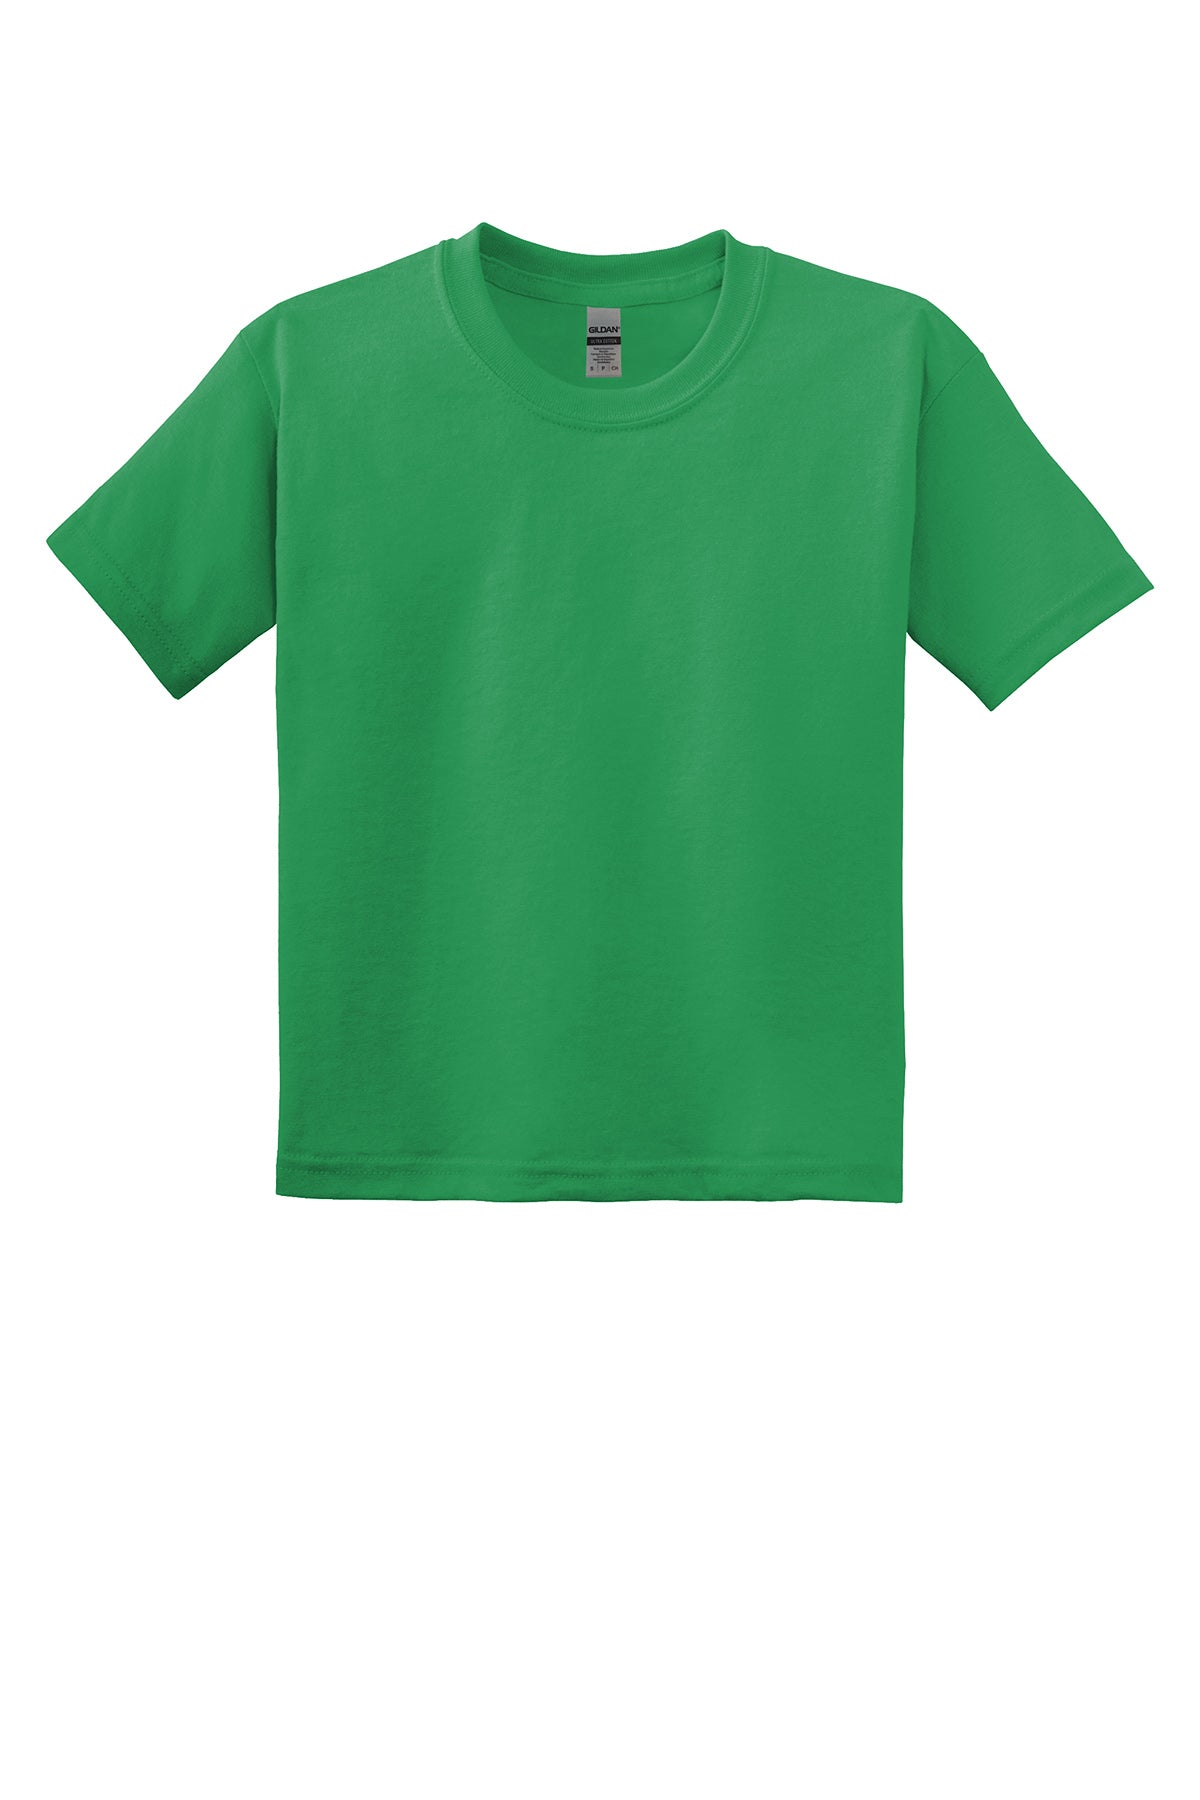 Gildan 8000B Youth Dryblend T-Shirt Yth Small / Kelly Green